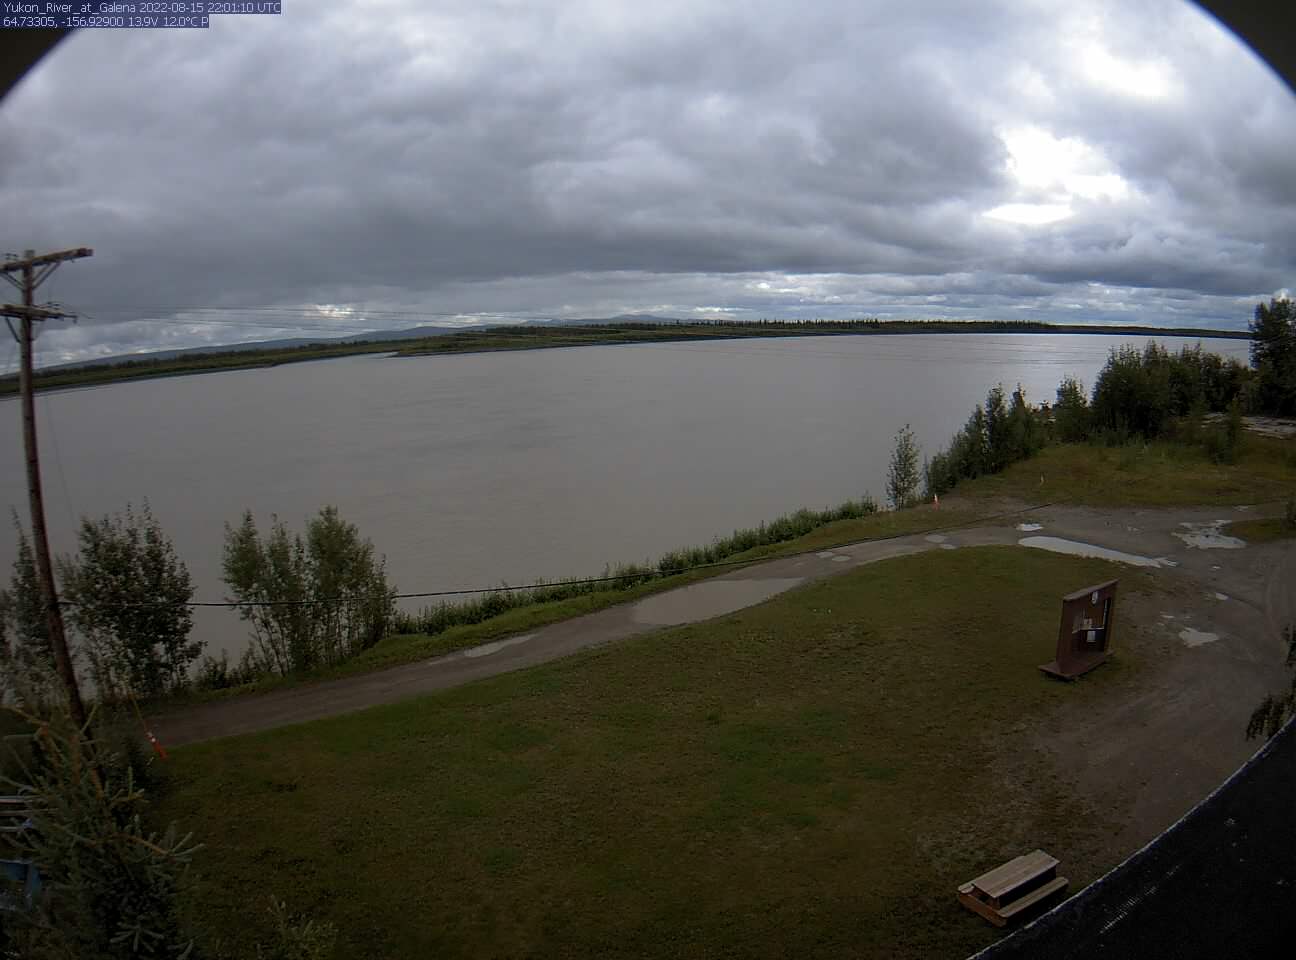 Yukon_River_at_Galena_20220815220111.jpg